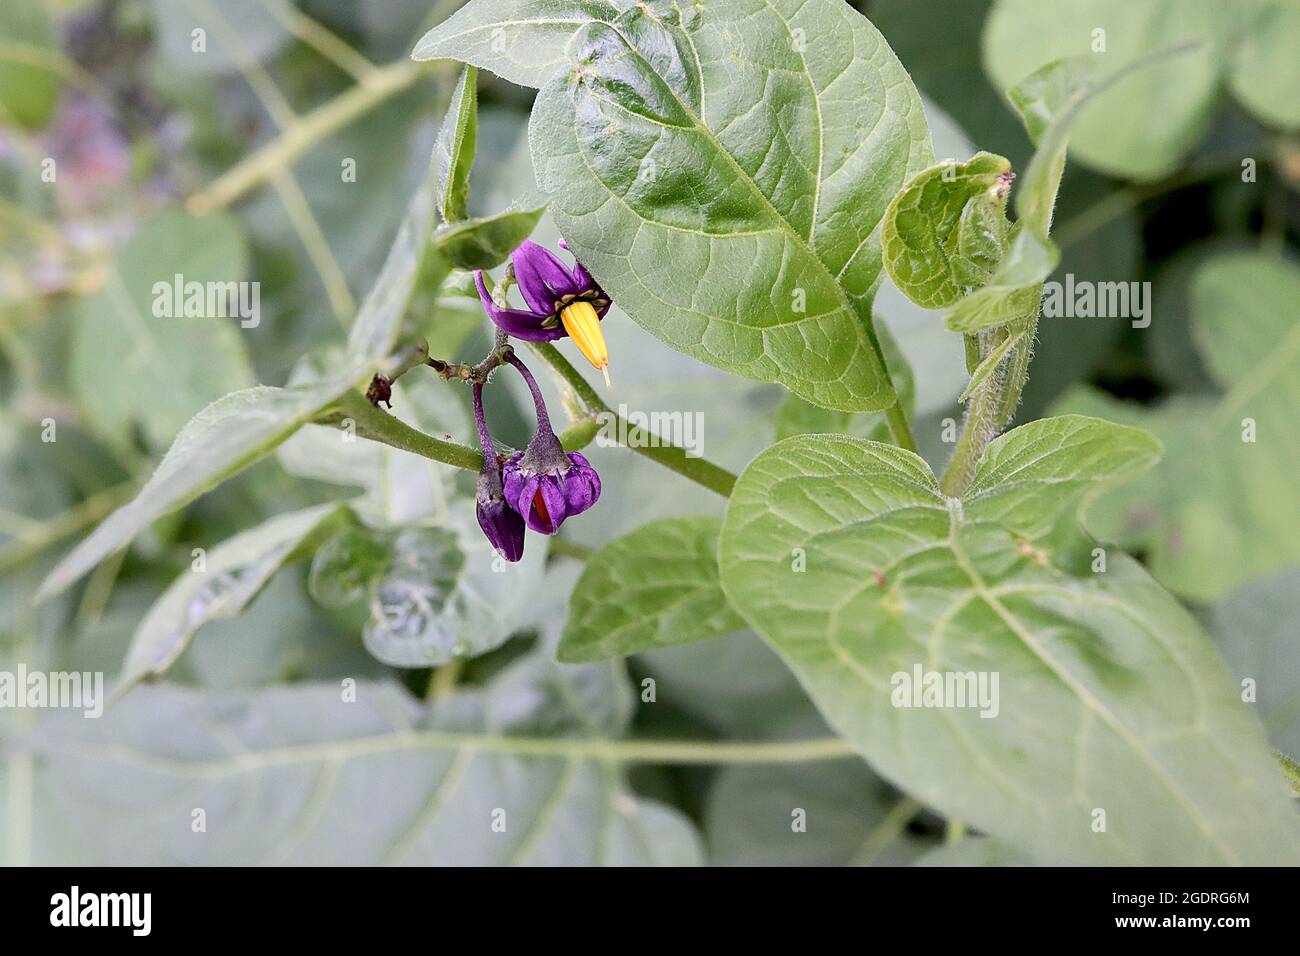 Solanum dulcamara Sombra de noche agridulce – flores púrpura profundas con pétalos reflejos y estambres amarillos fusionados, hojas grandes lobuladas, julio, Inglaterra, Reino Unido Foto de stock